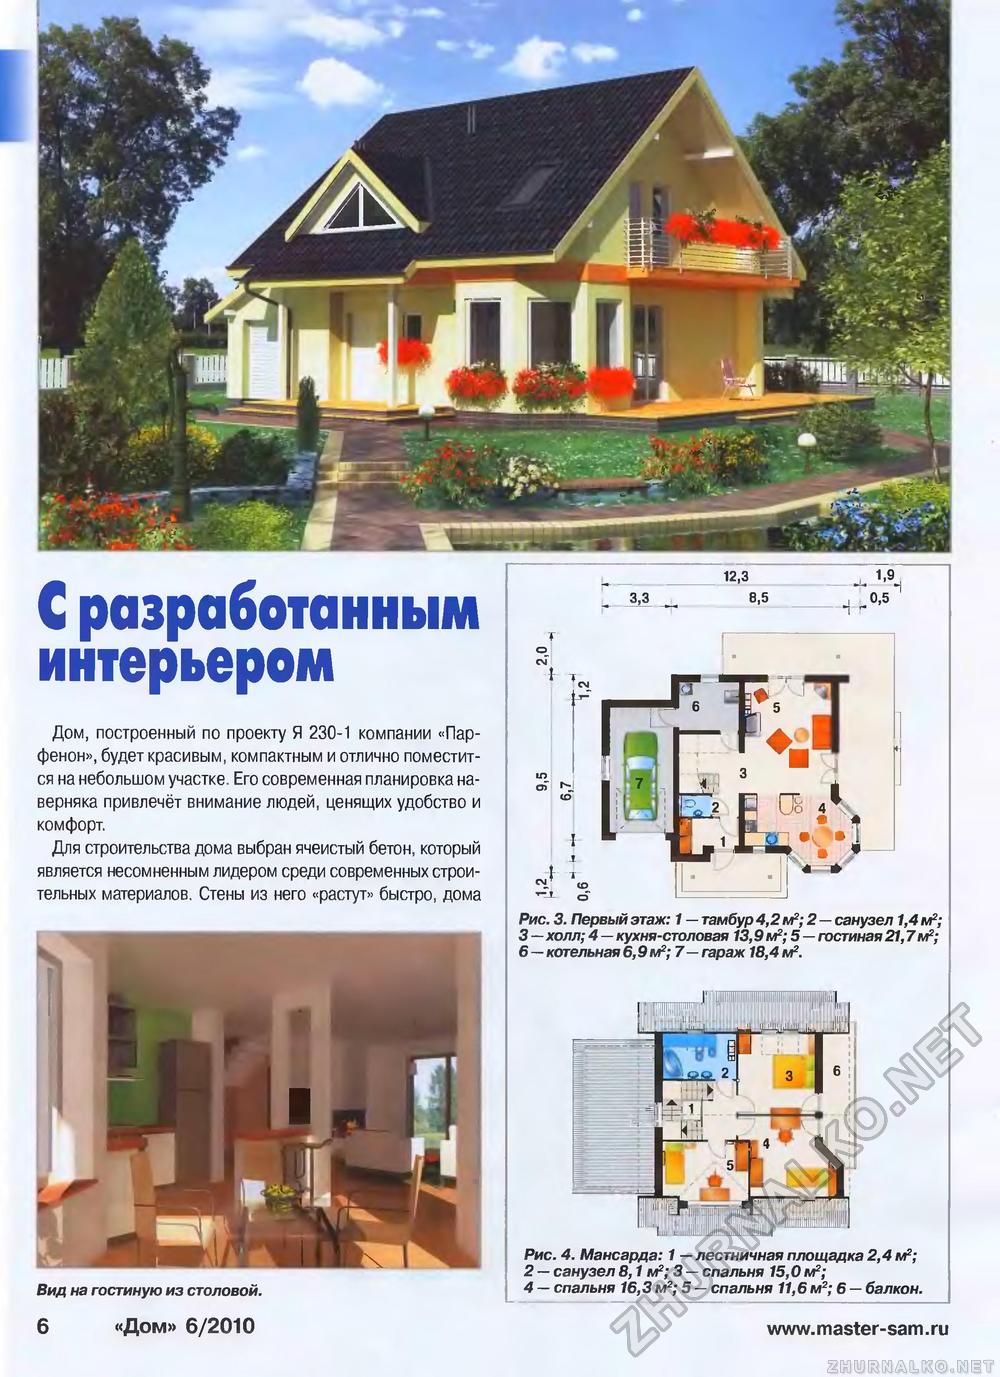 Дом 2010-06, страница 6